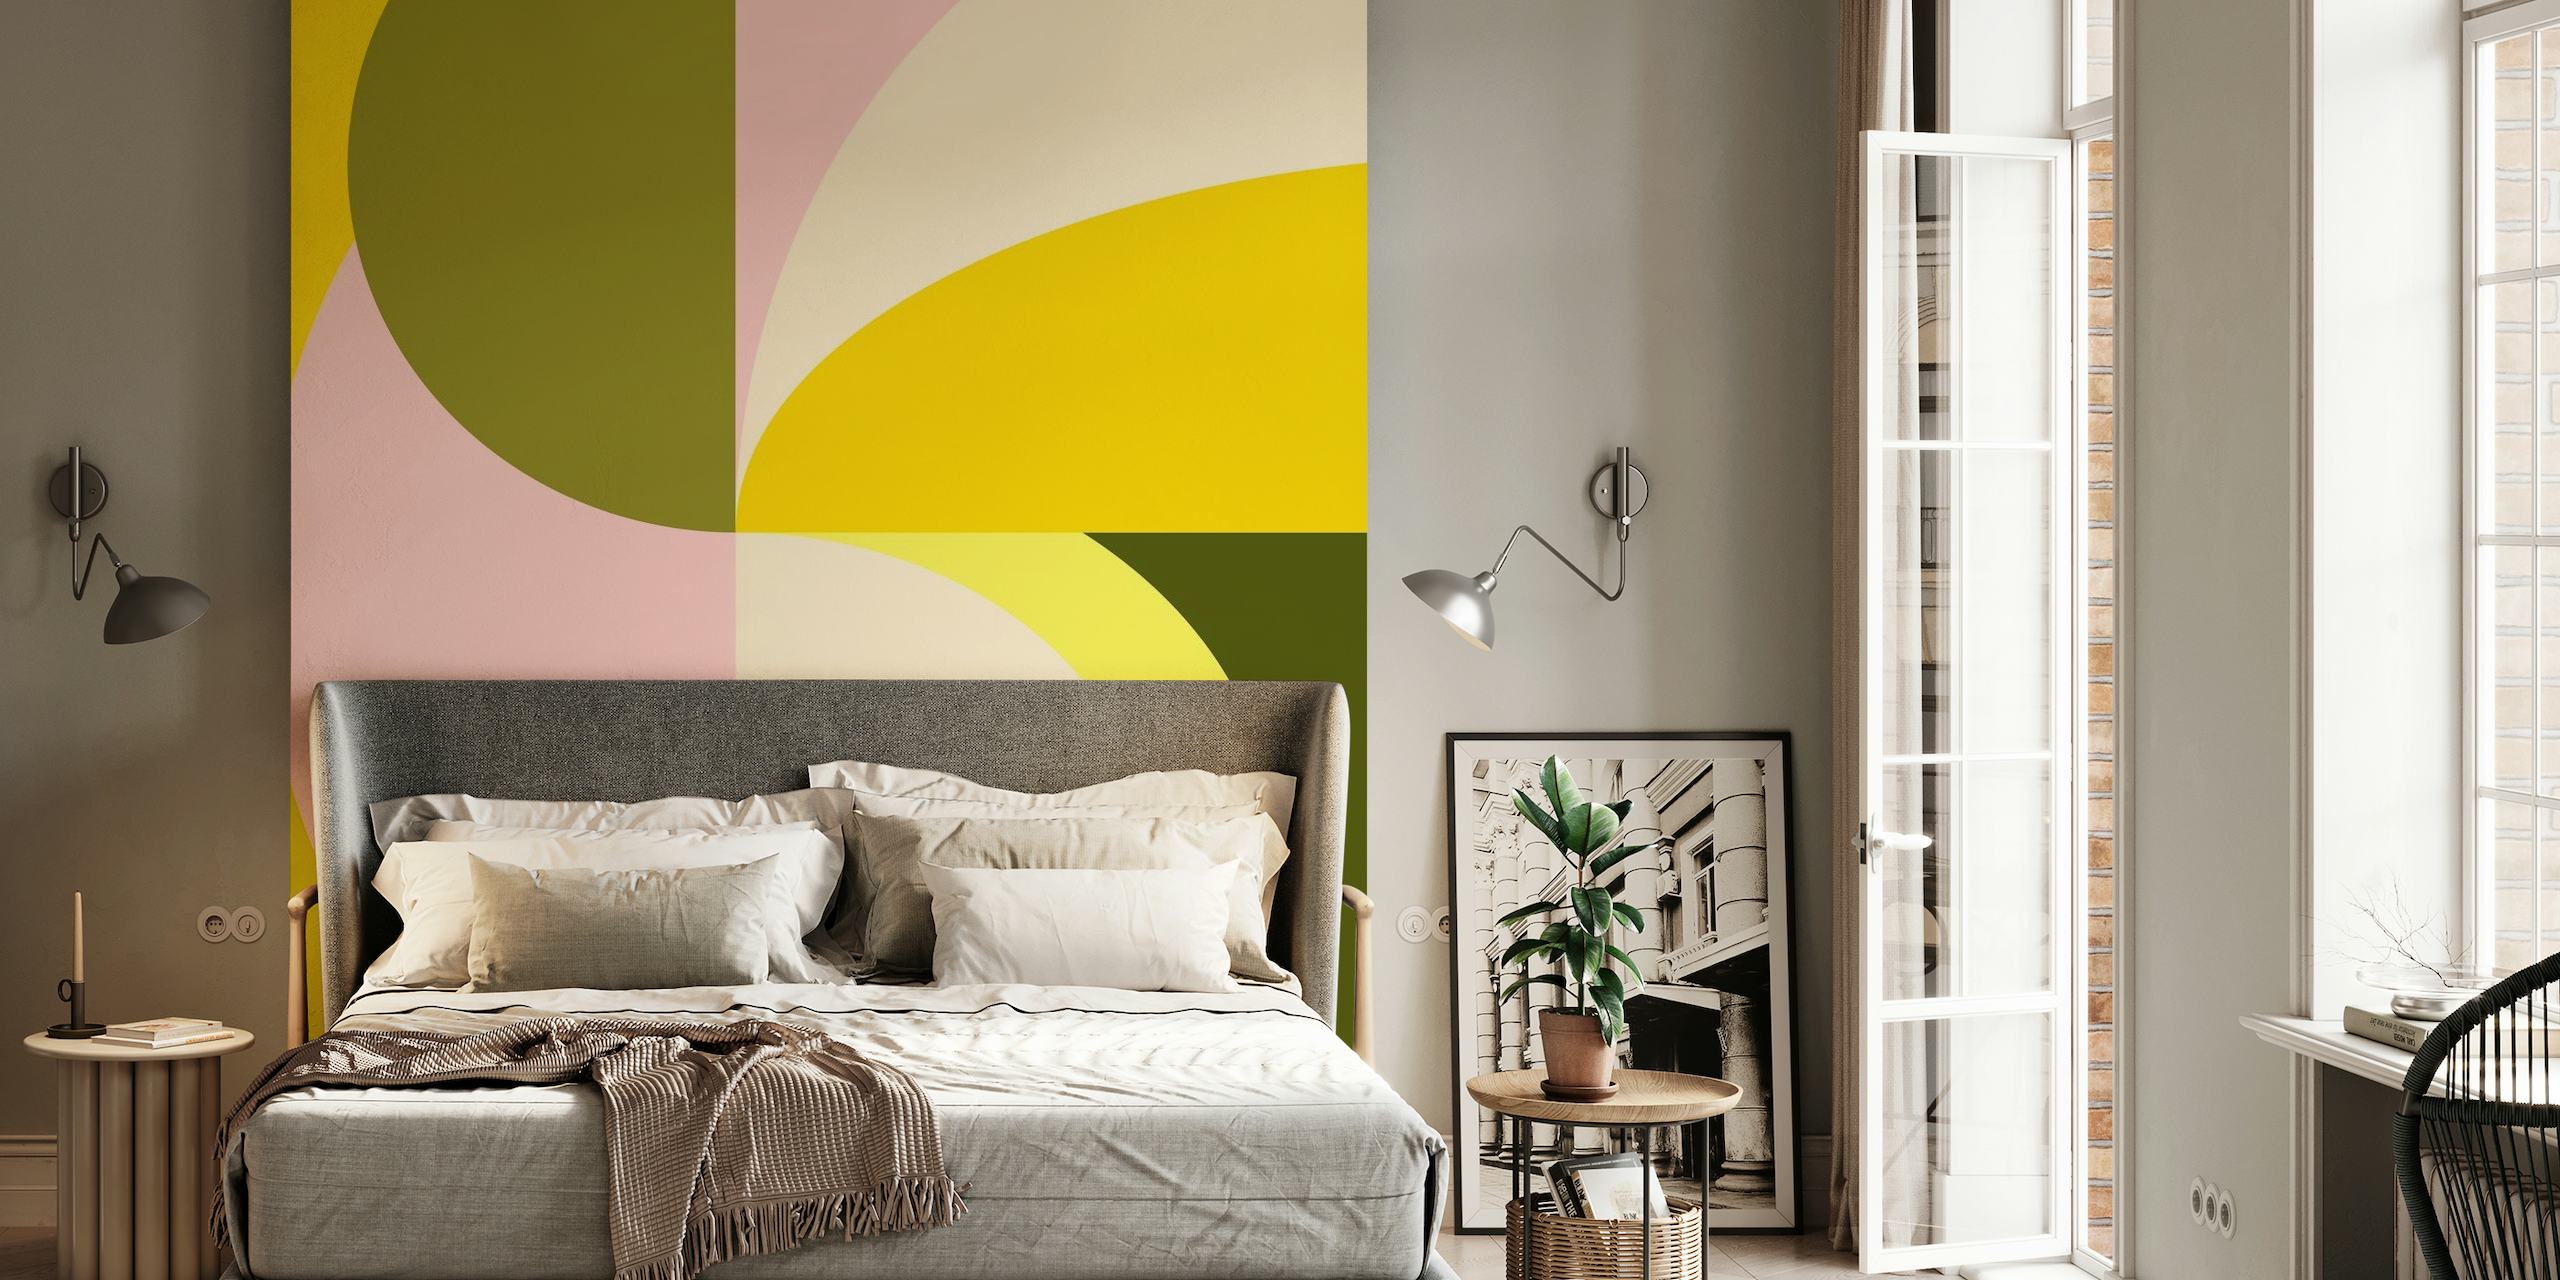 Väggmålning med abstrakta geometriska former med citrusfärger inklusive gula, rosa och gröna toner